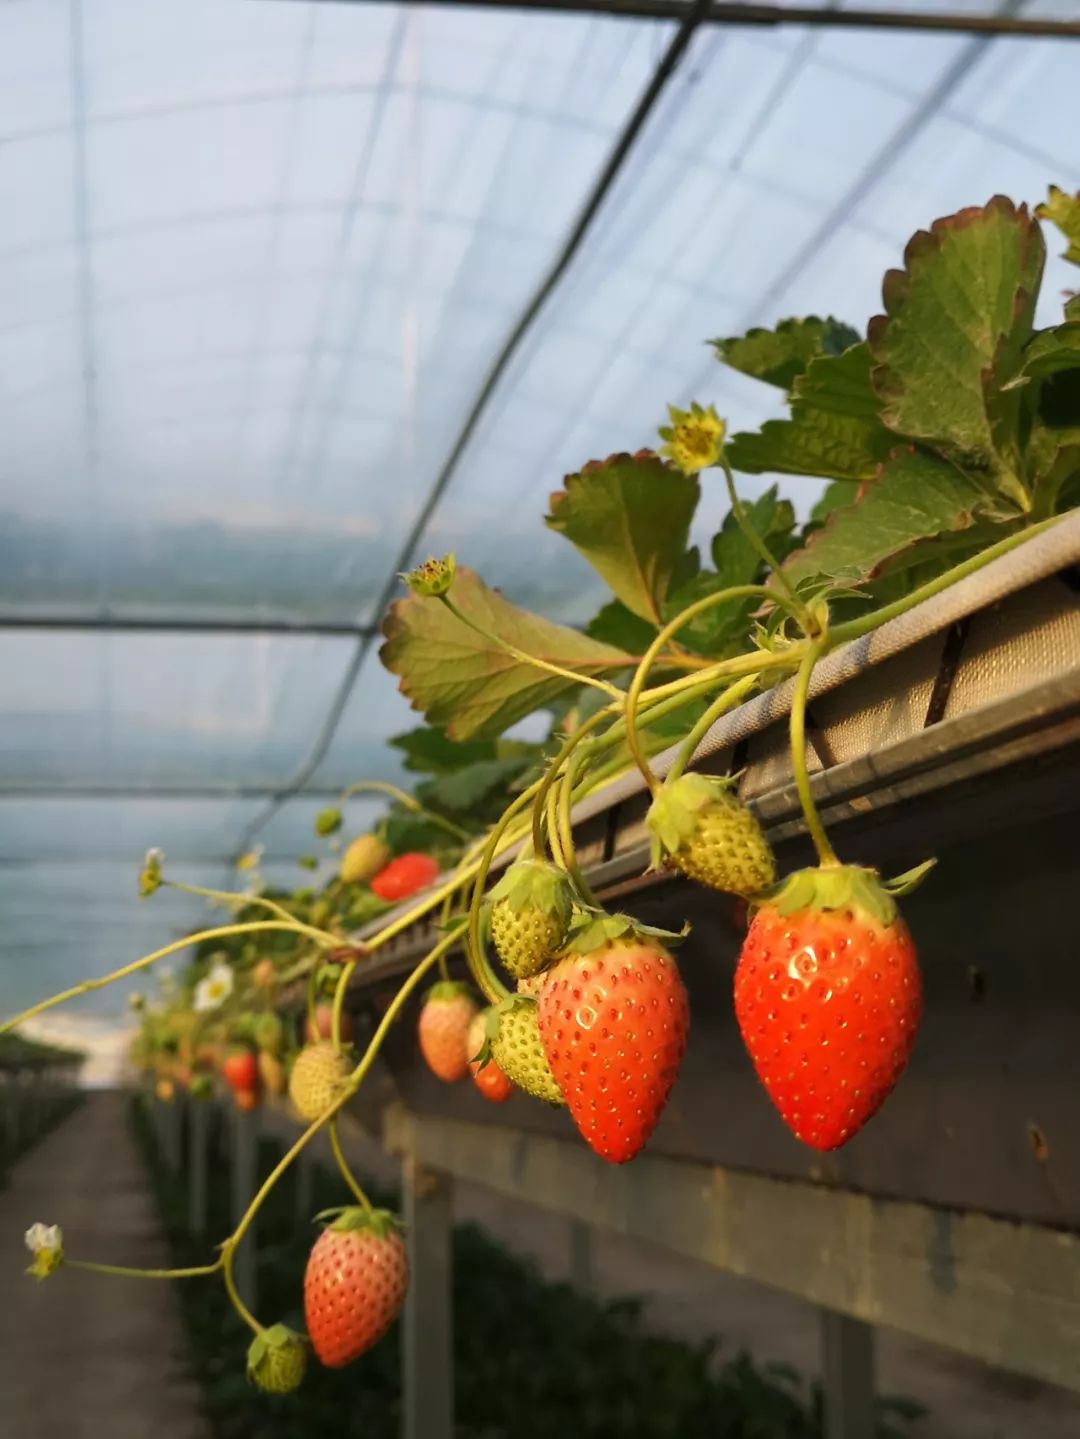 这里众多草莓园开始推广立体高架栽培,便于市民观光采摘